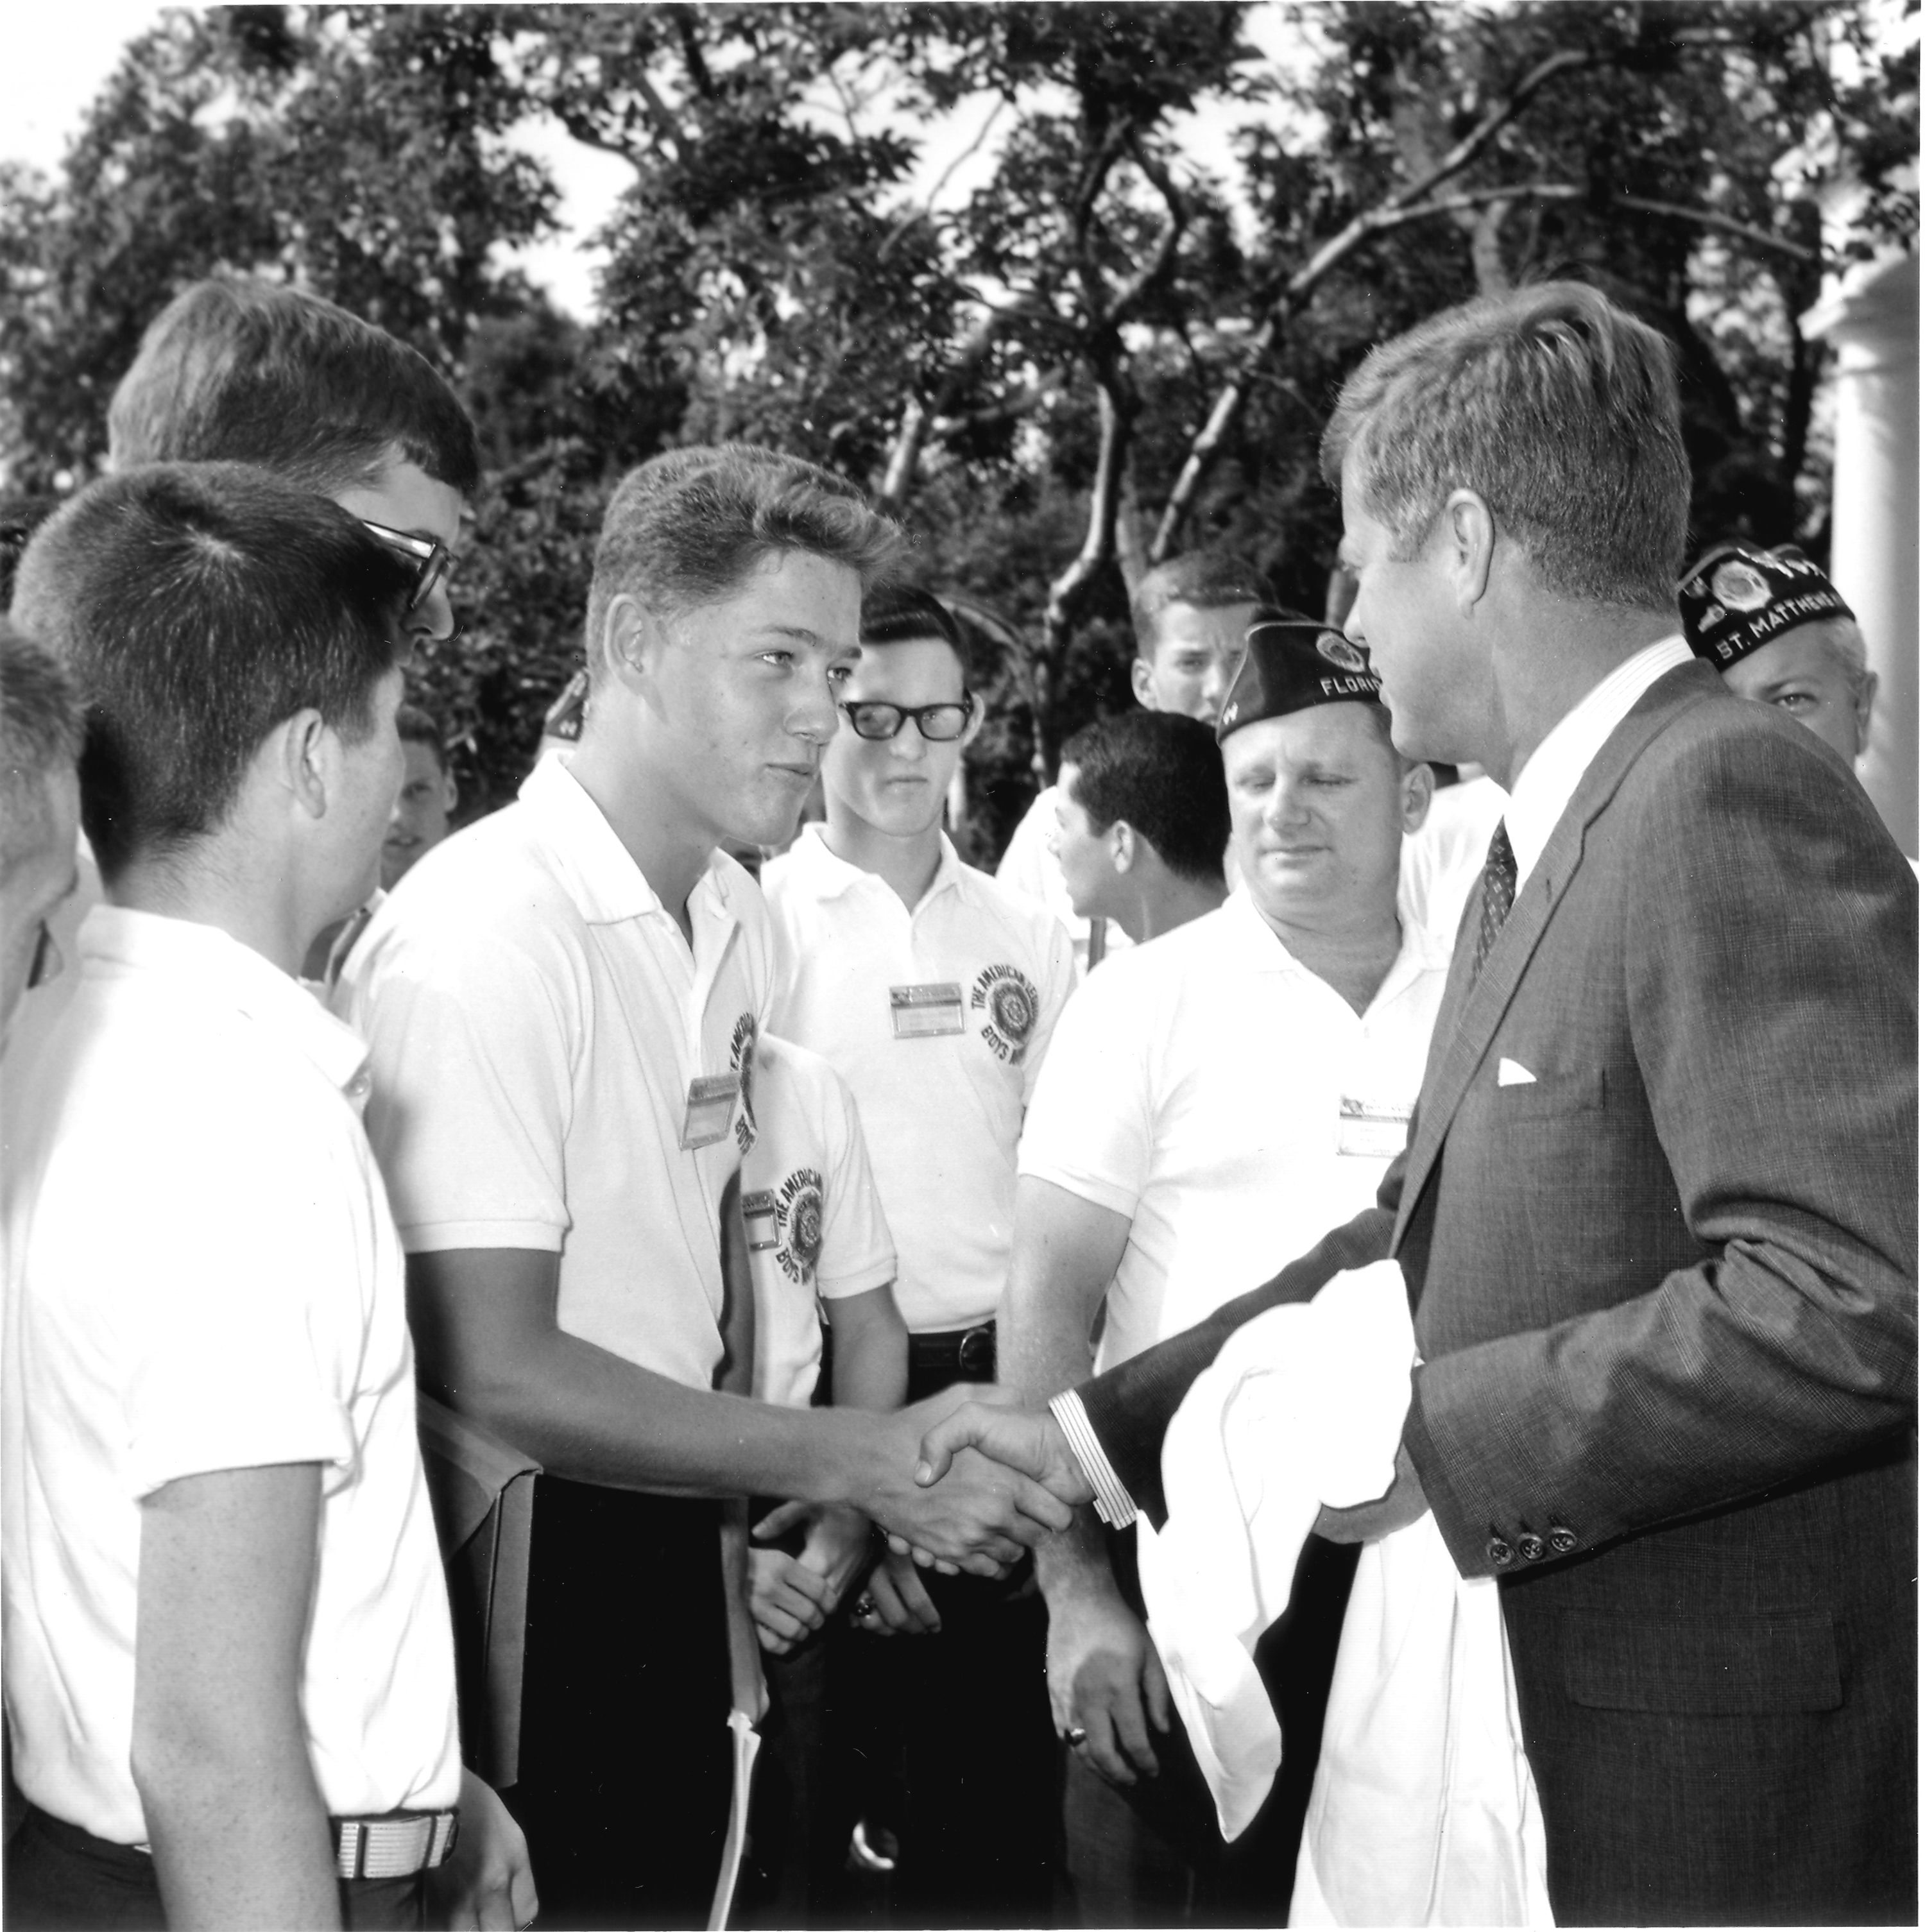 Five decades ago, Bill Clinton meets JFK